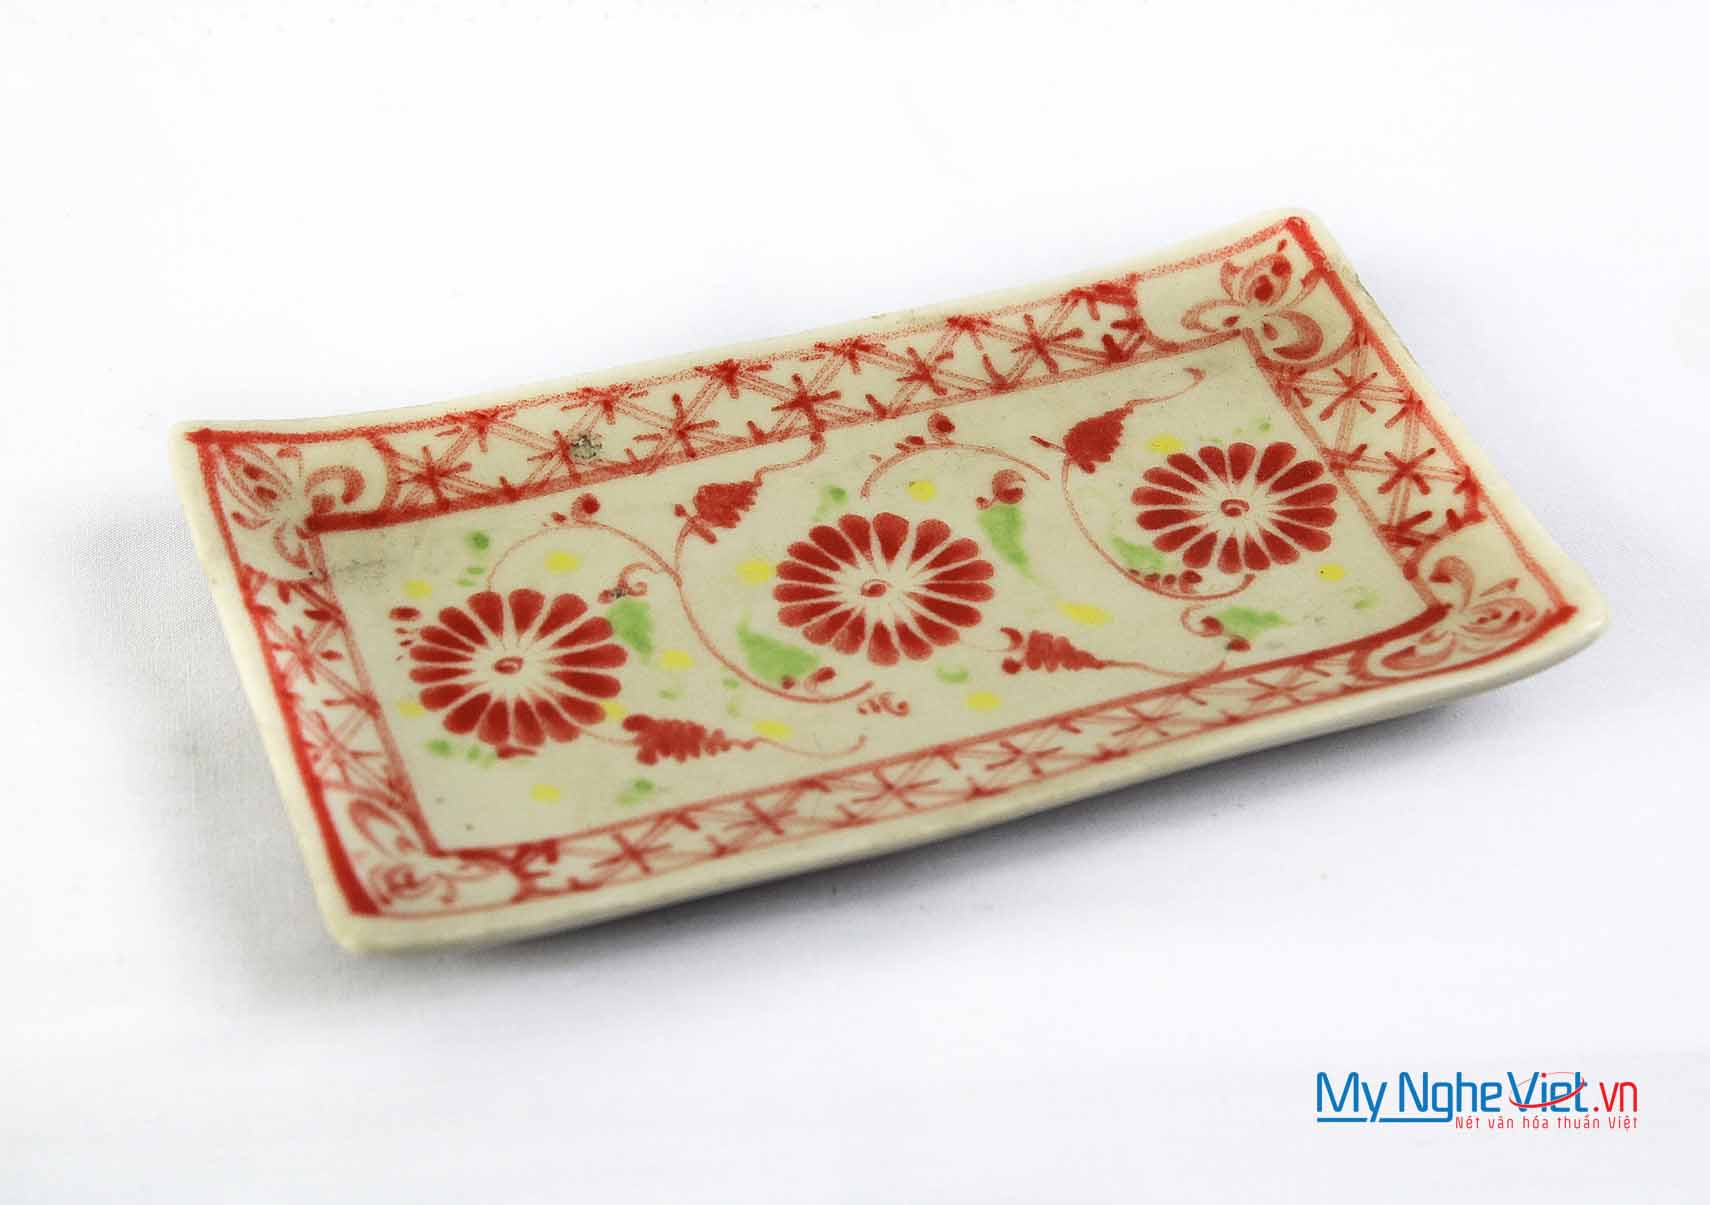 Đĩa chữ nhật khăn ăn gốm Bát Tràng hoa văn hoa cúc đỏ MNV-BOA17